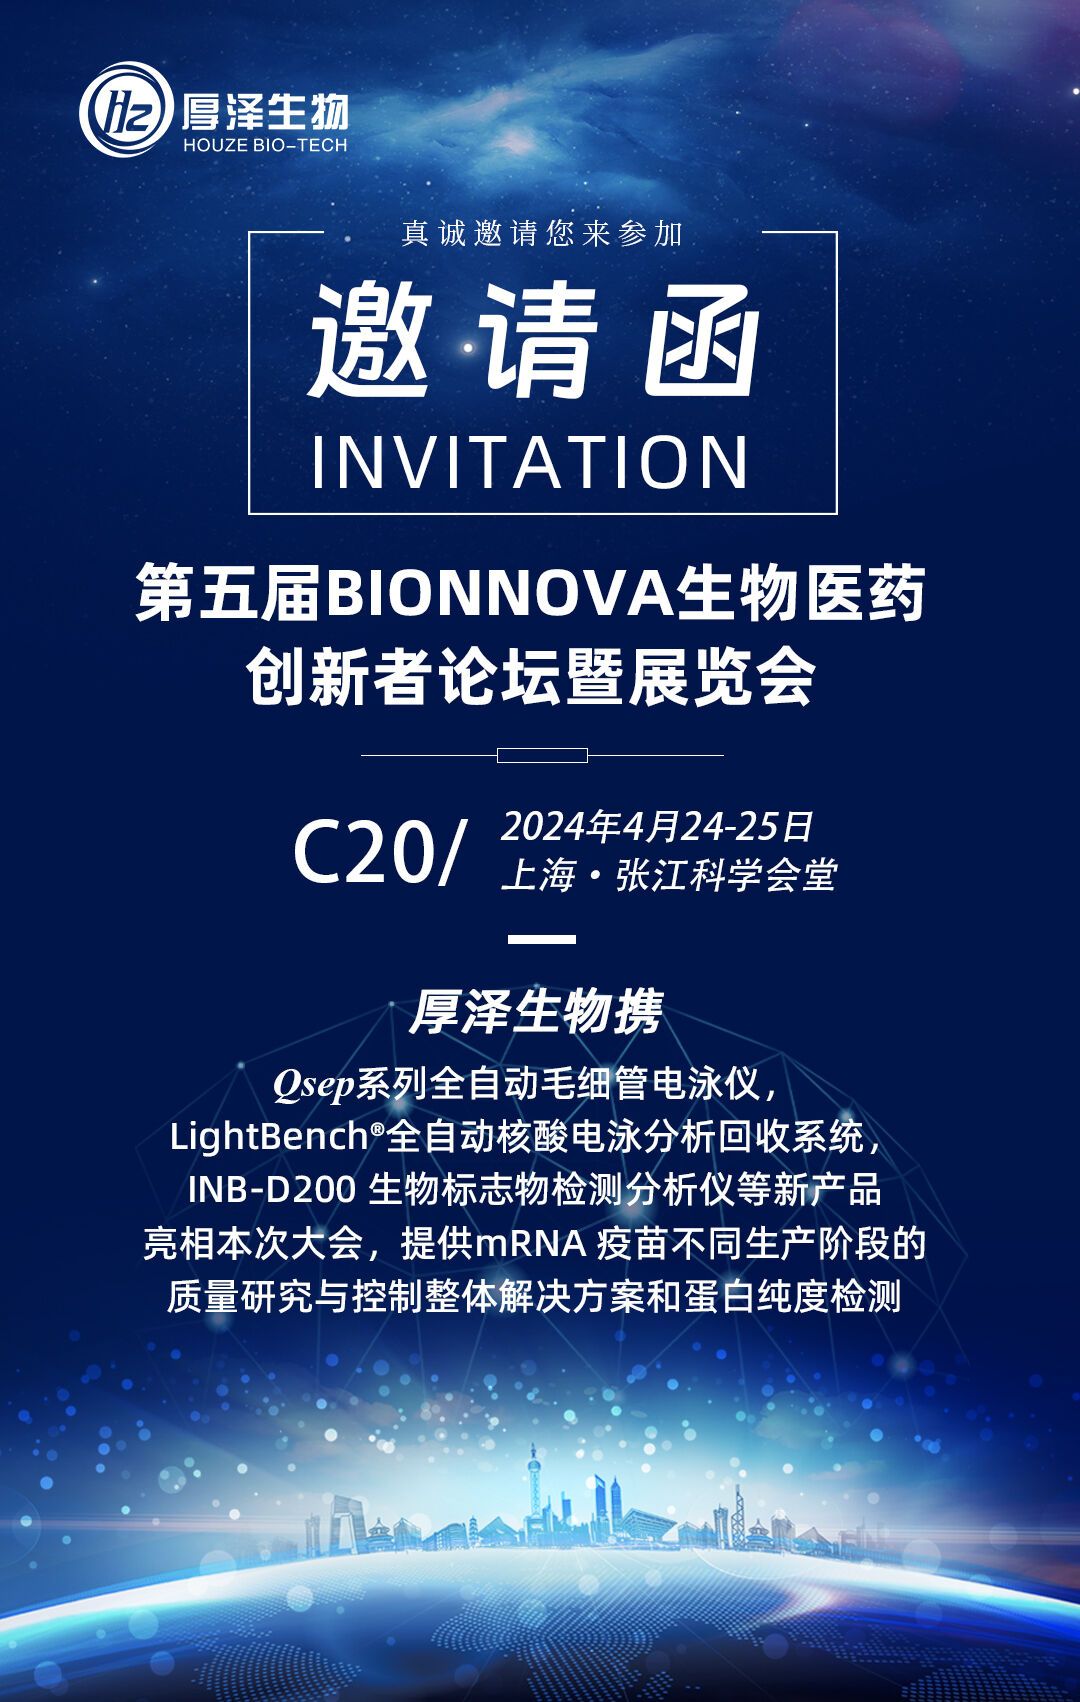 会议预告|第五届BIONNOVA生物医药创新者论坛暨展览会